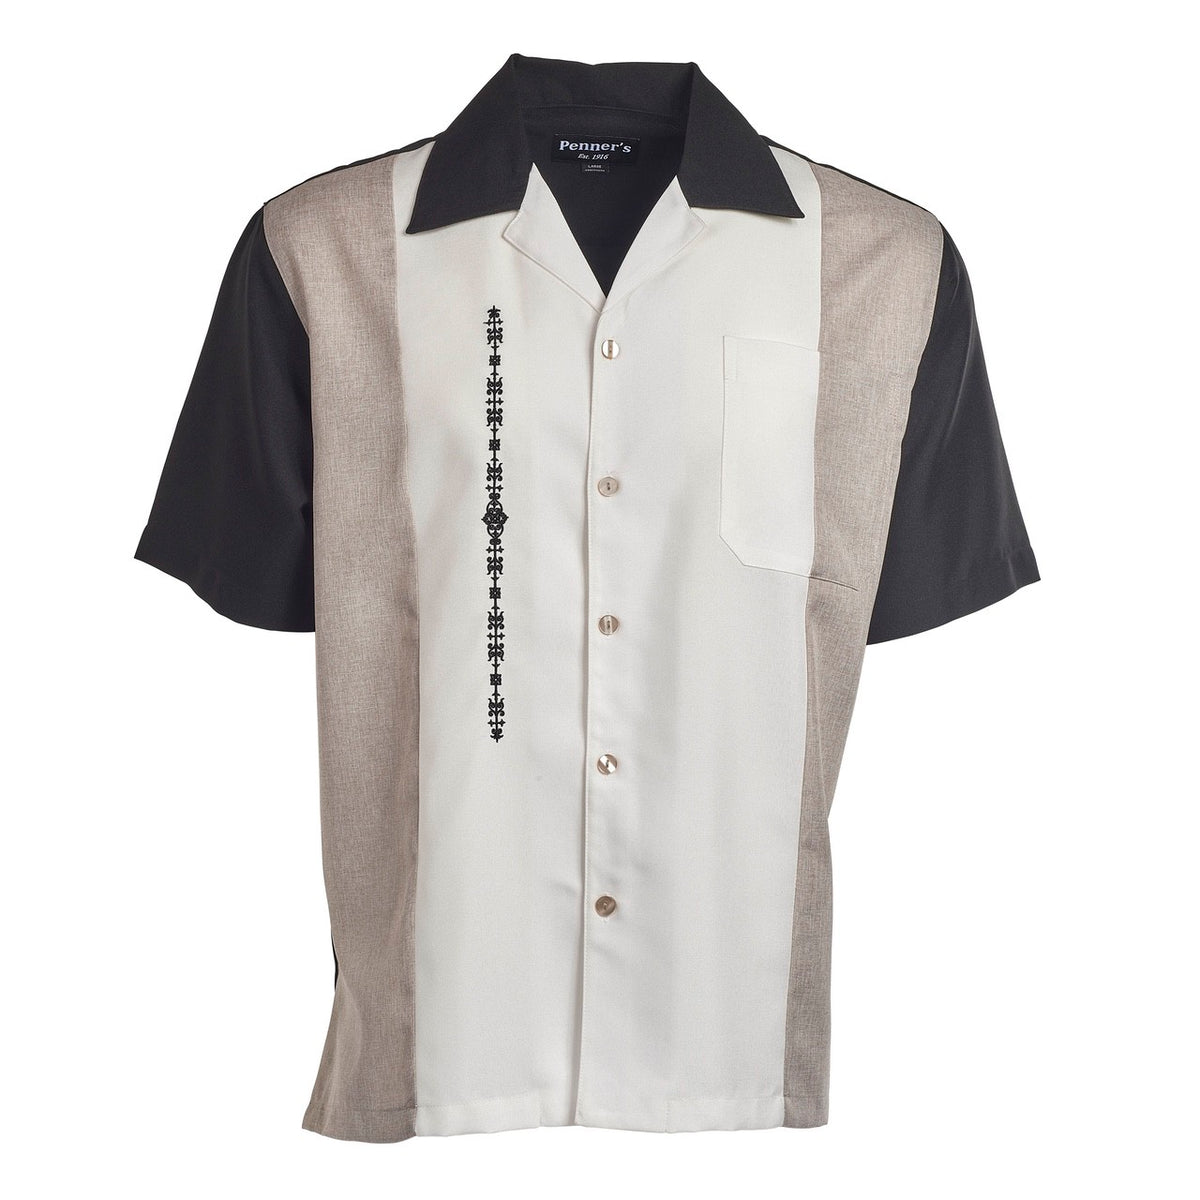 El Patron Retro Camp Shirt | Penner's Men's Clothing - San Antonio ...